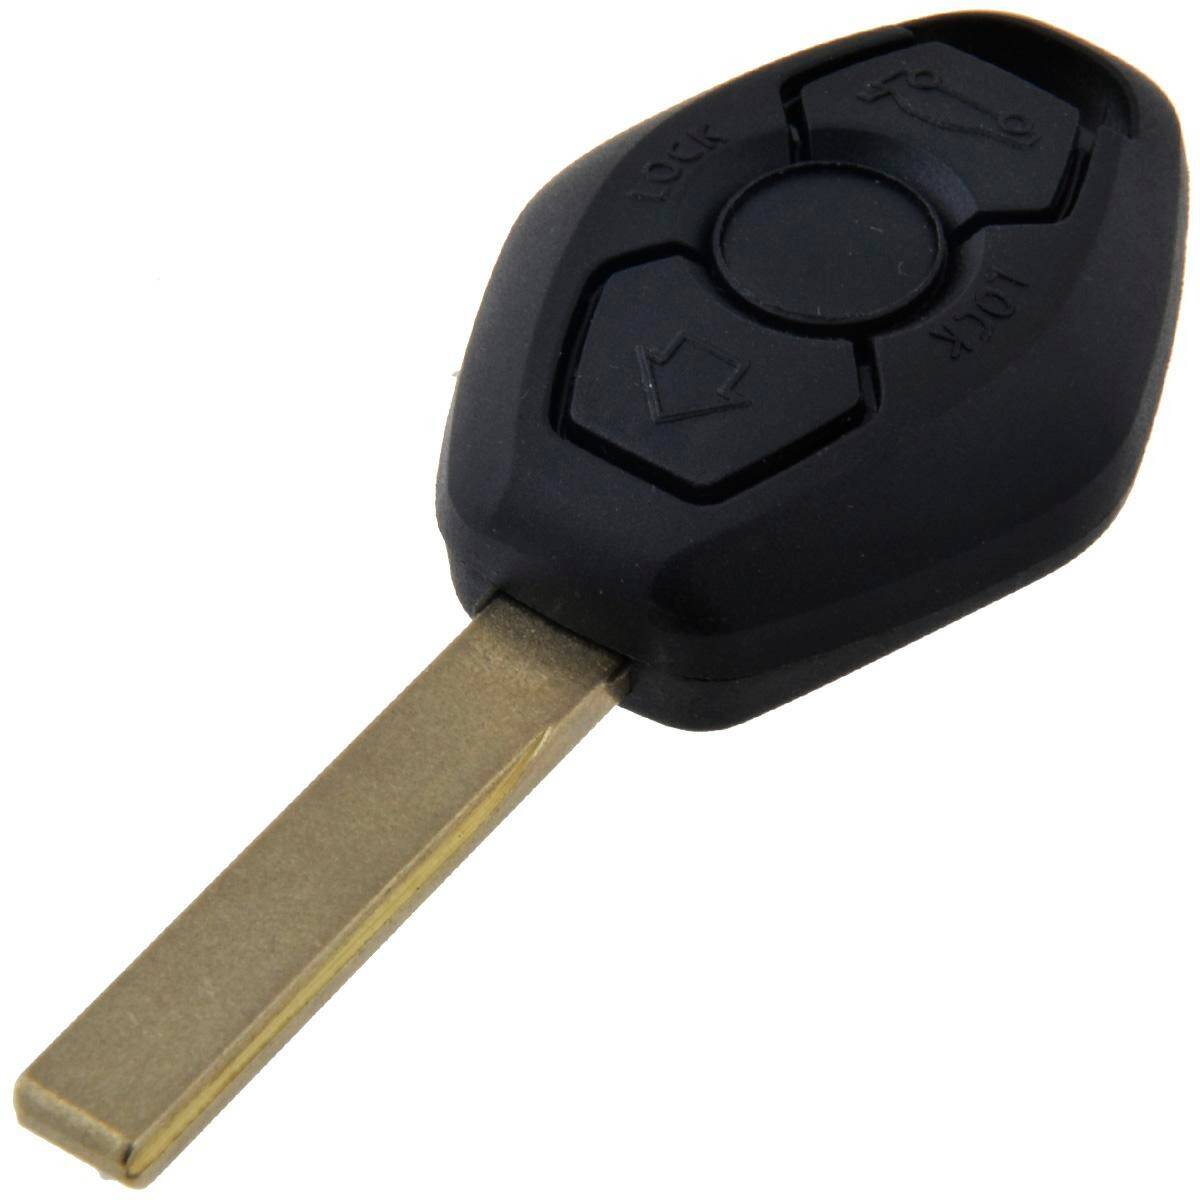 BMW Schlüssel Gehäuse mit 1 Taste - Mr Key